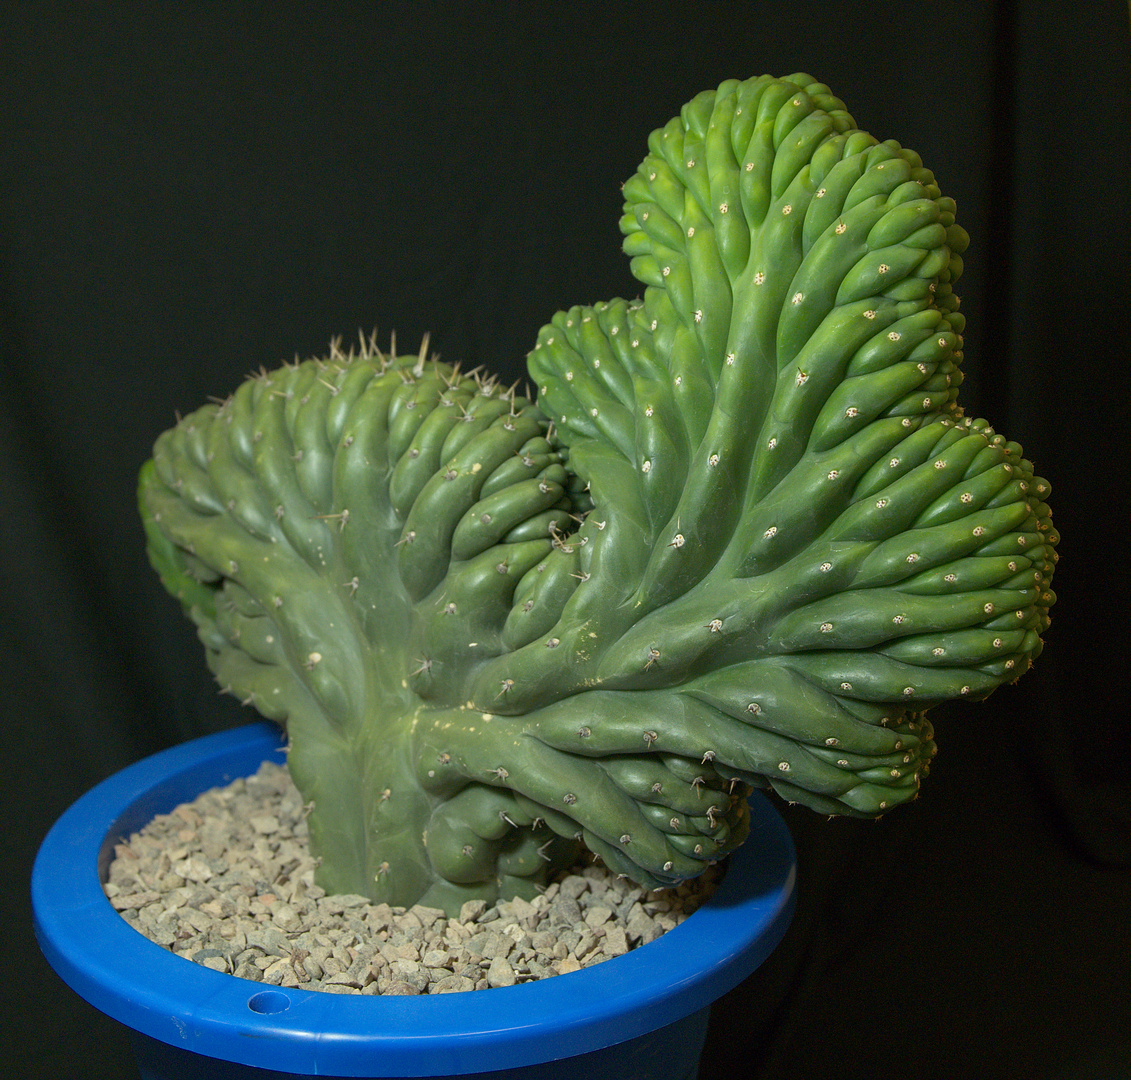 SCCSS 2017 November - Winner Novice Cactus - Terri Straub - Cereus peruvianus f. cristatus